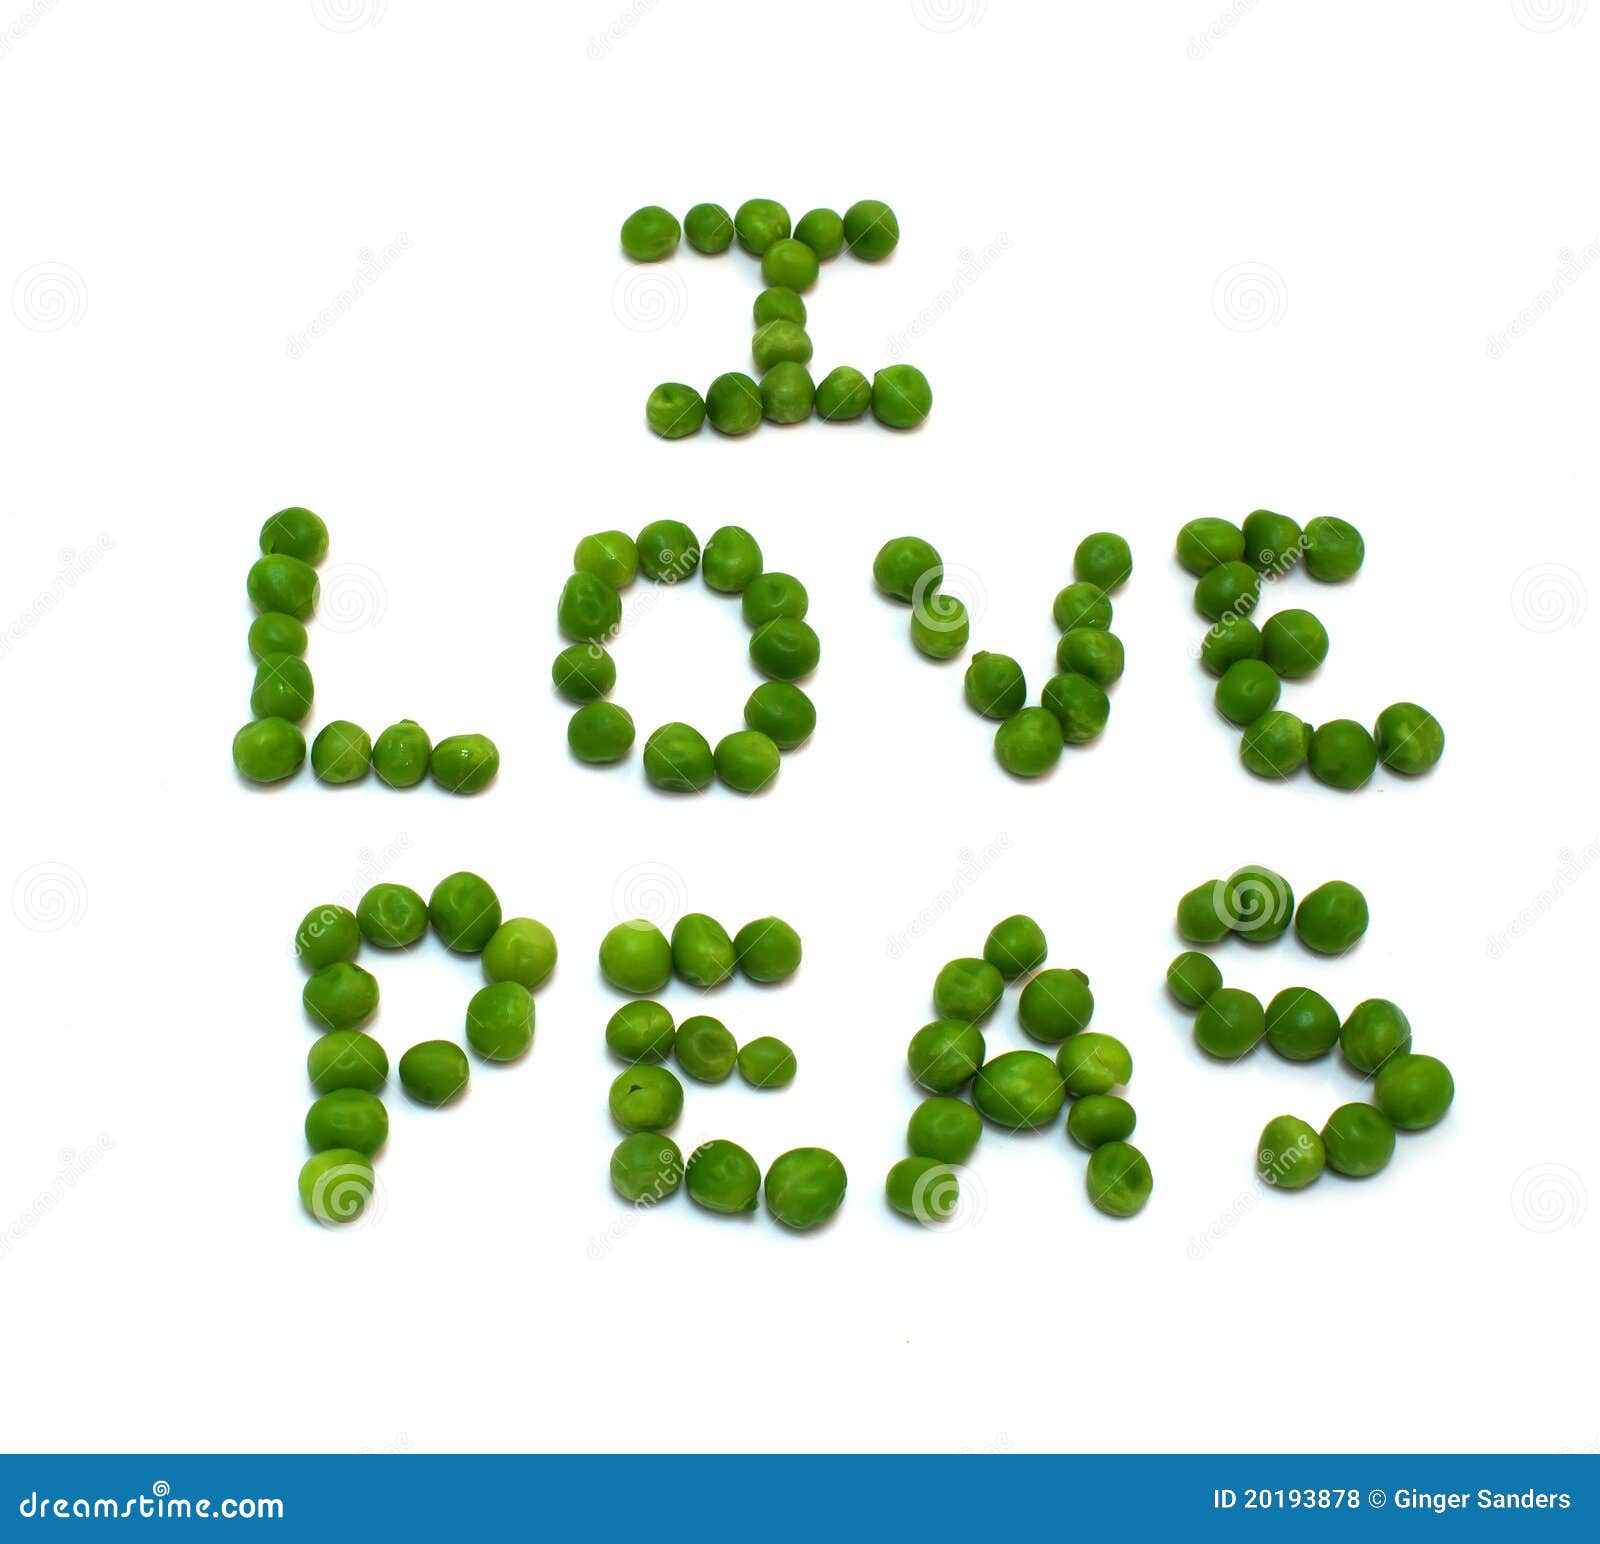 i-love-peas-20193878.jpg